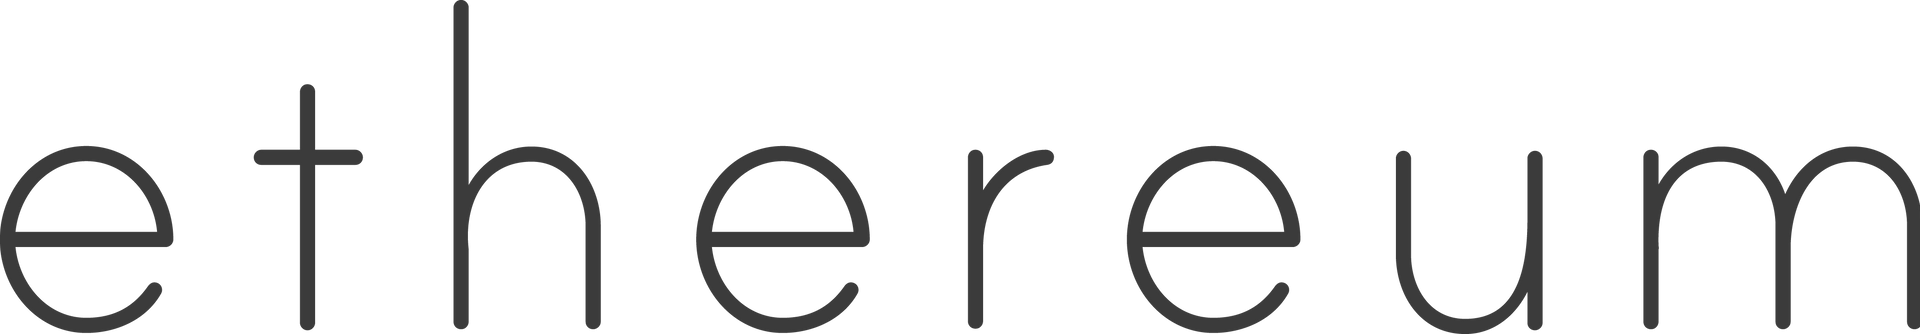 Графічний знак ETH (сірий)